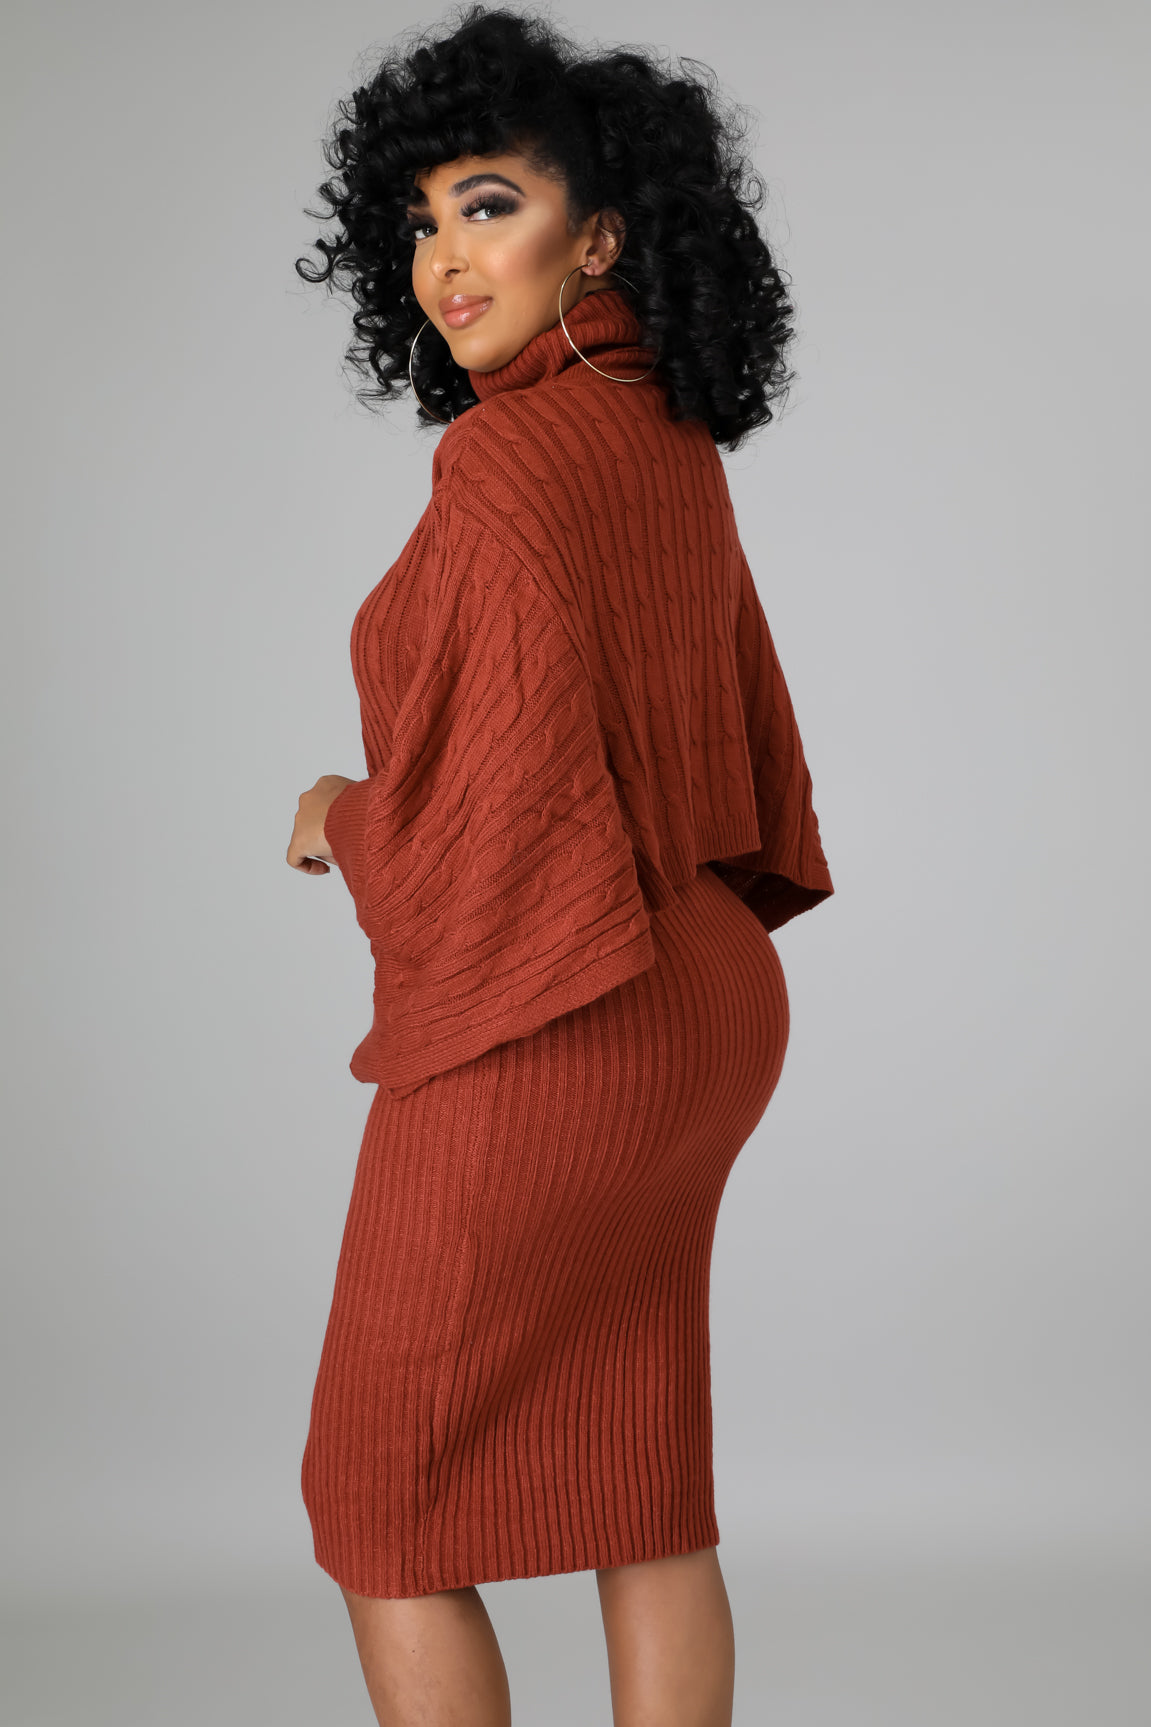 Lylah Sweater + Dress – Styling My Life by Sierra Wyatt